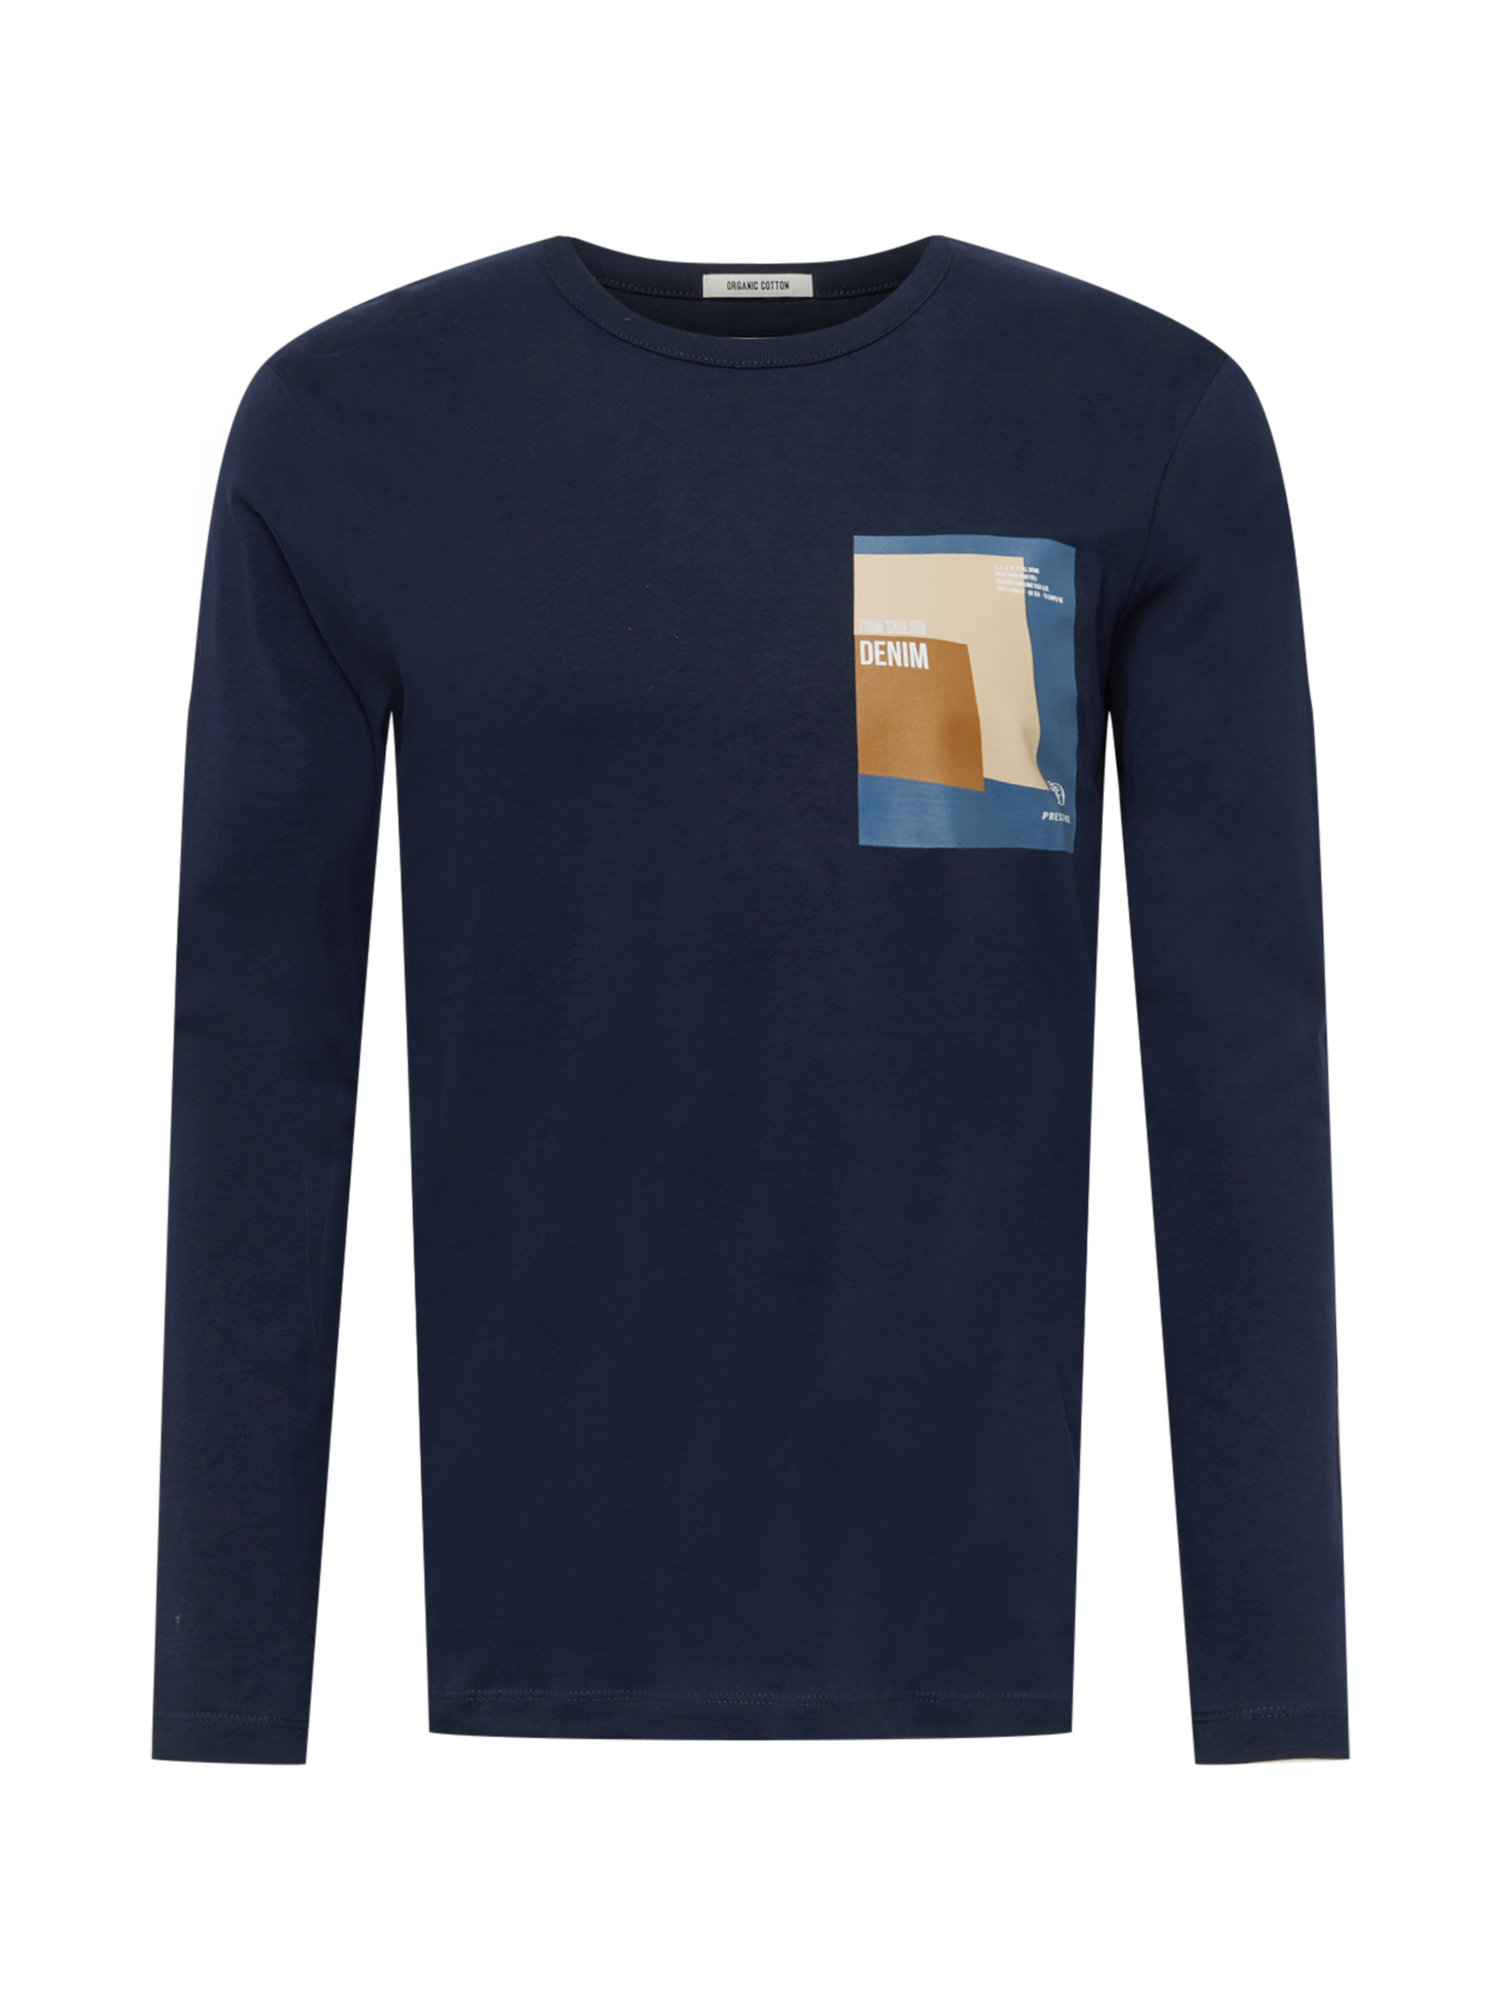 Bardziej zrównoważony Odzież TOM TAILOR DENIM Koszulka w kolorze Niebieski, Atramentowym 